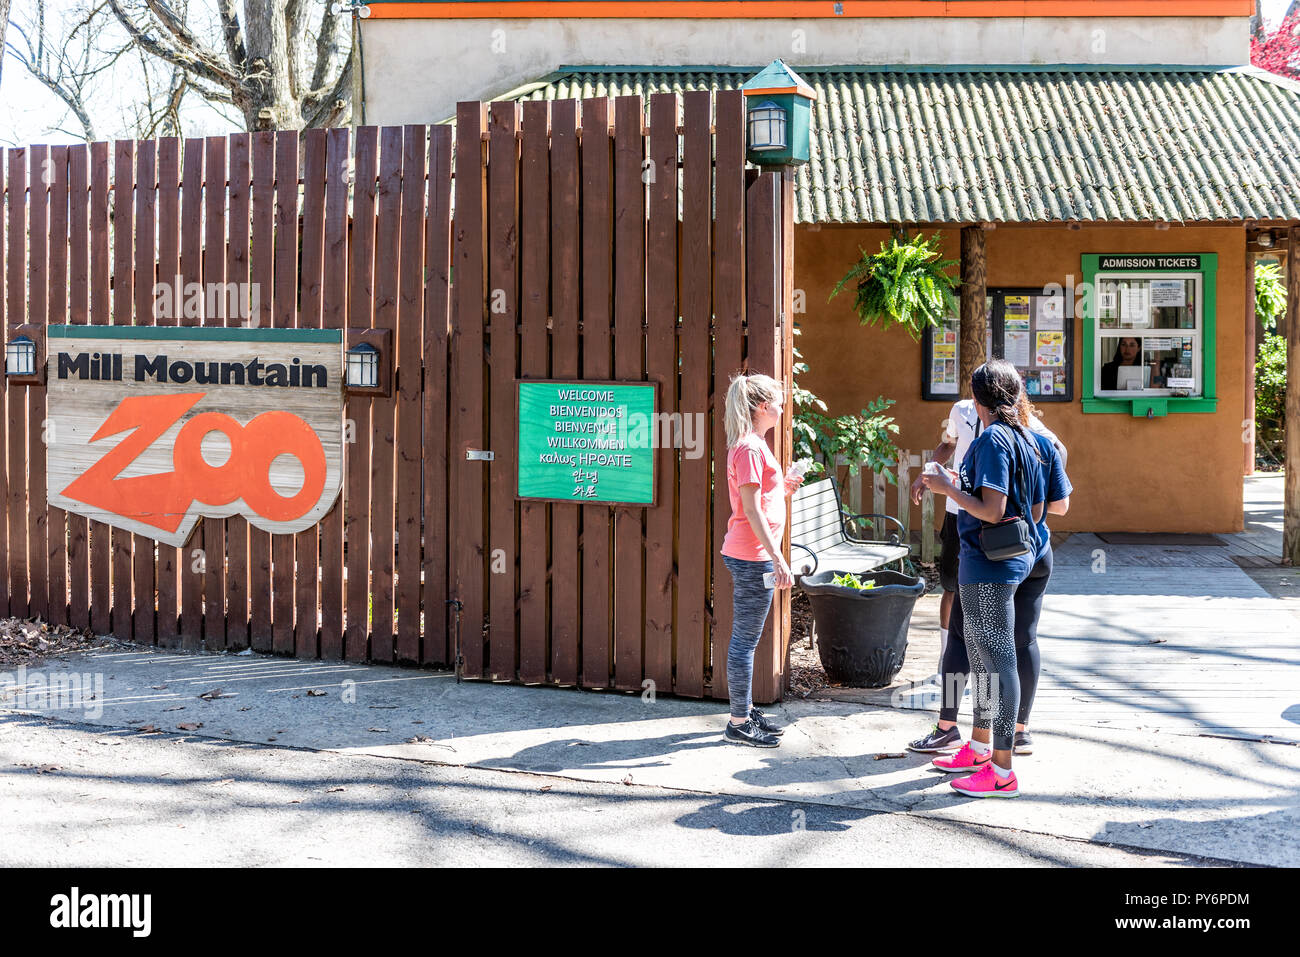 Roanoke, États-Unis - 18 Avril 2018 : Mill Mountain Park en Virginie au printemps avec signe pour le zoo, les jeunes pendant les jours ensoleillés, entrée privée Banque D'Images